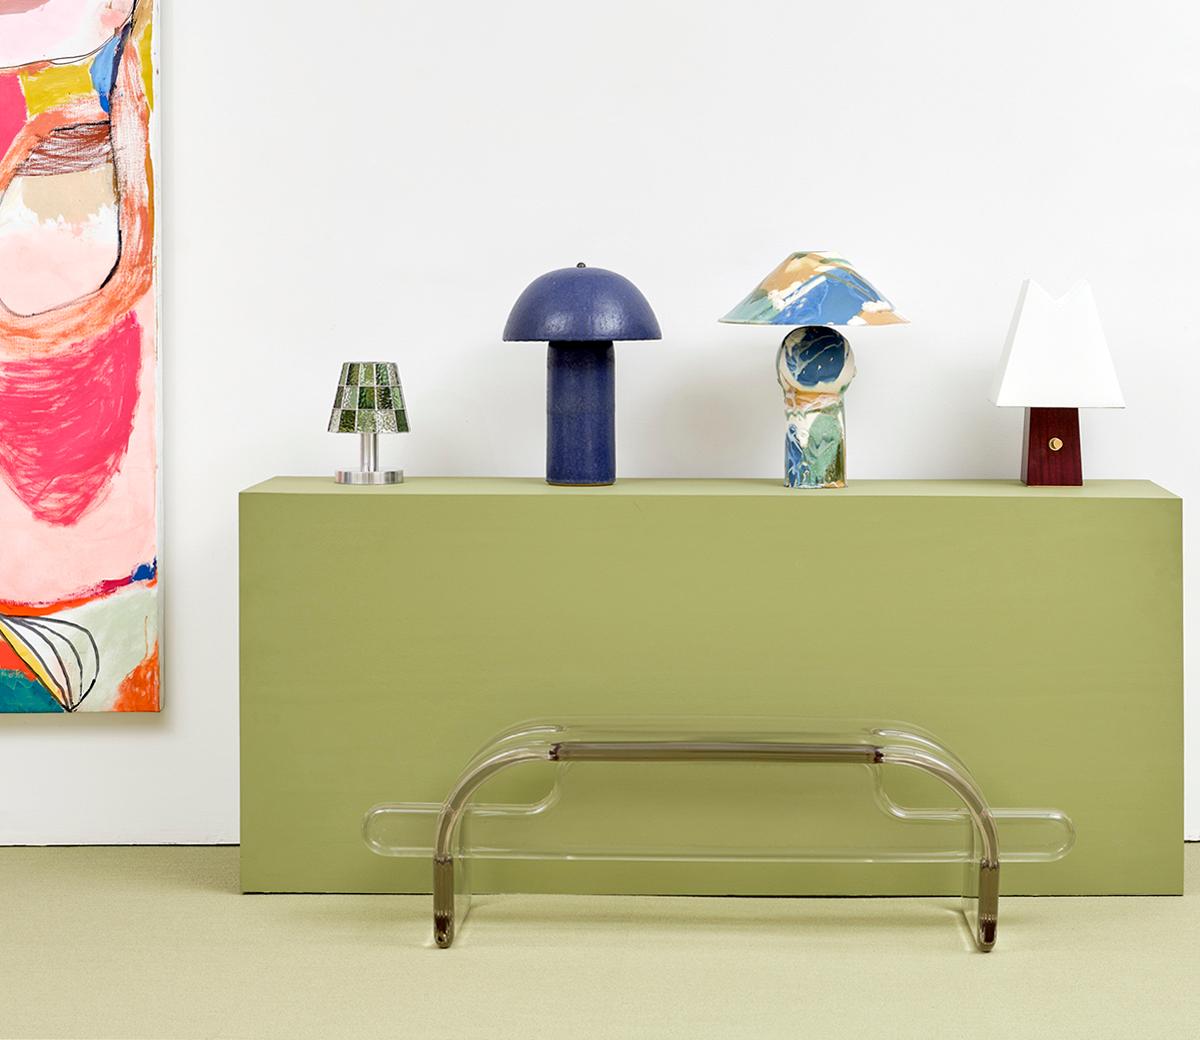 Dans la série de meubles sculpturaux Plump de Ian Cochran, les formes jouent sur l'effet que produit la résine lorsque la lumière est réfractée à travers un matériau solide. Les pièces ne sont maintenues ensemble que par des encoches à chaque